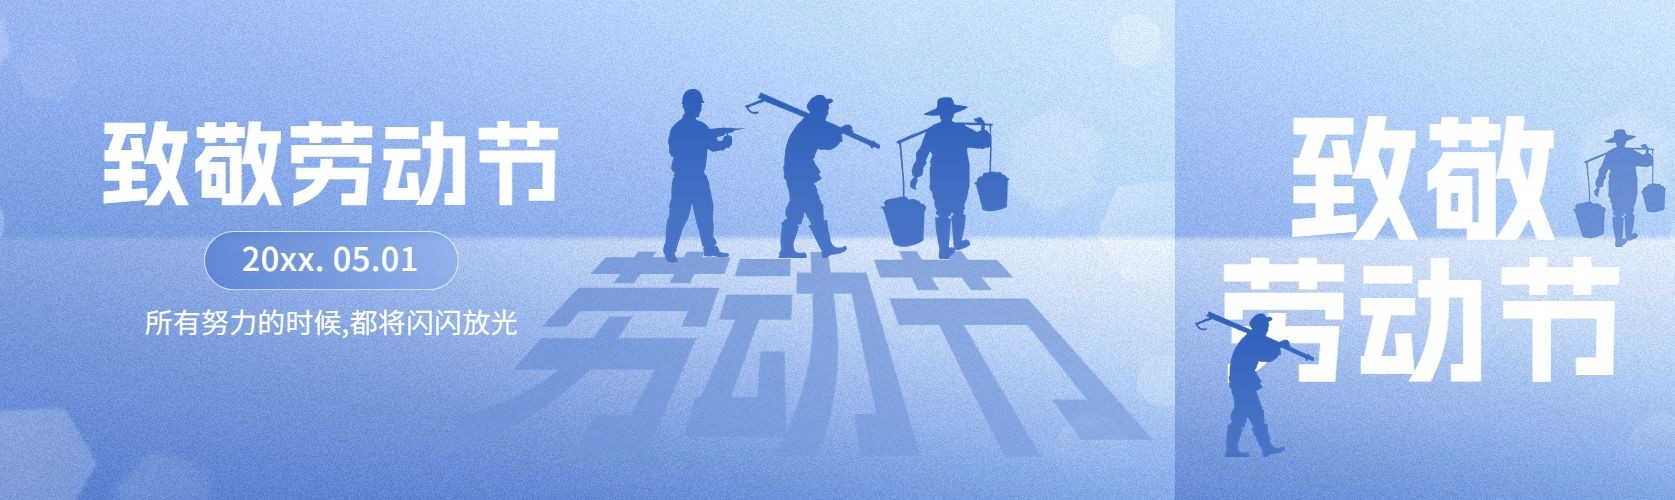 五一劳动节节日祝福剪影公众号首图预览效果